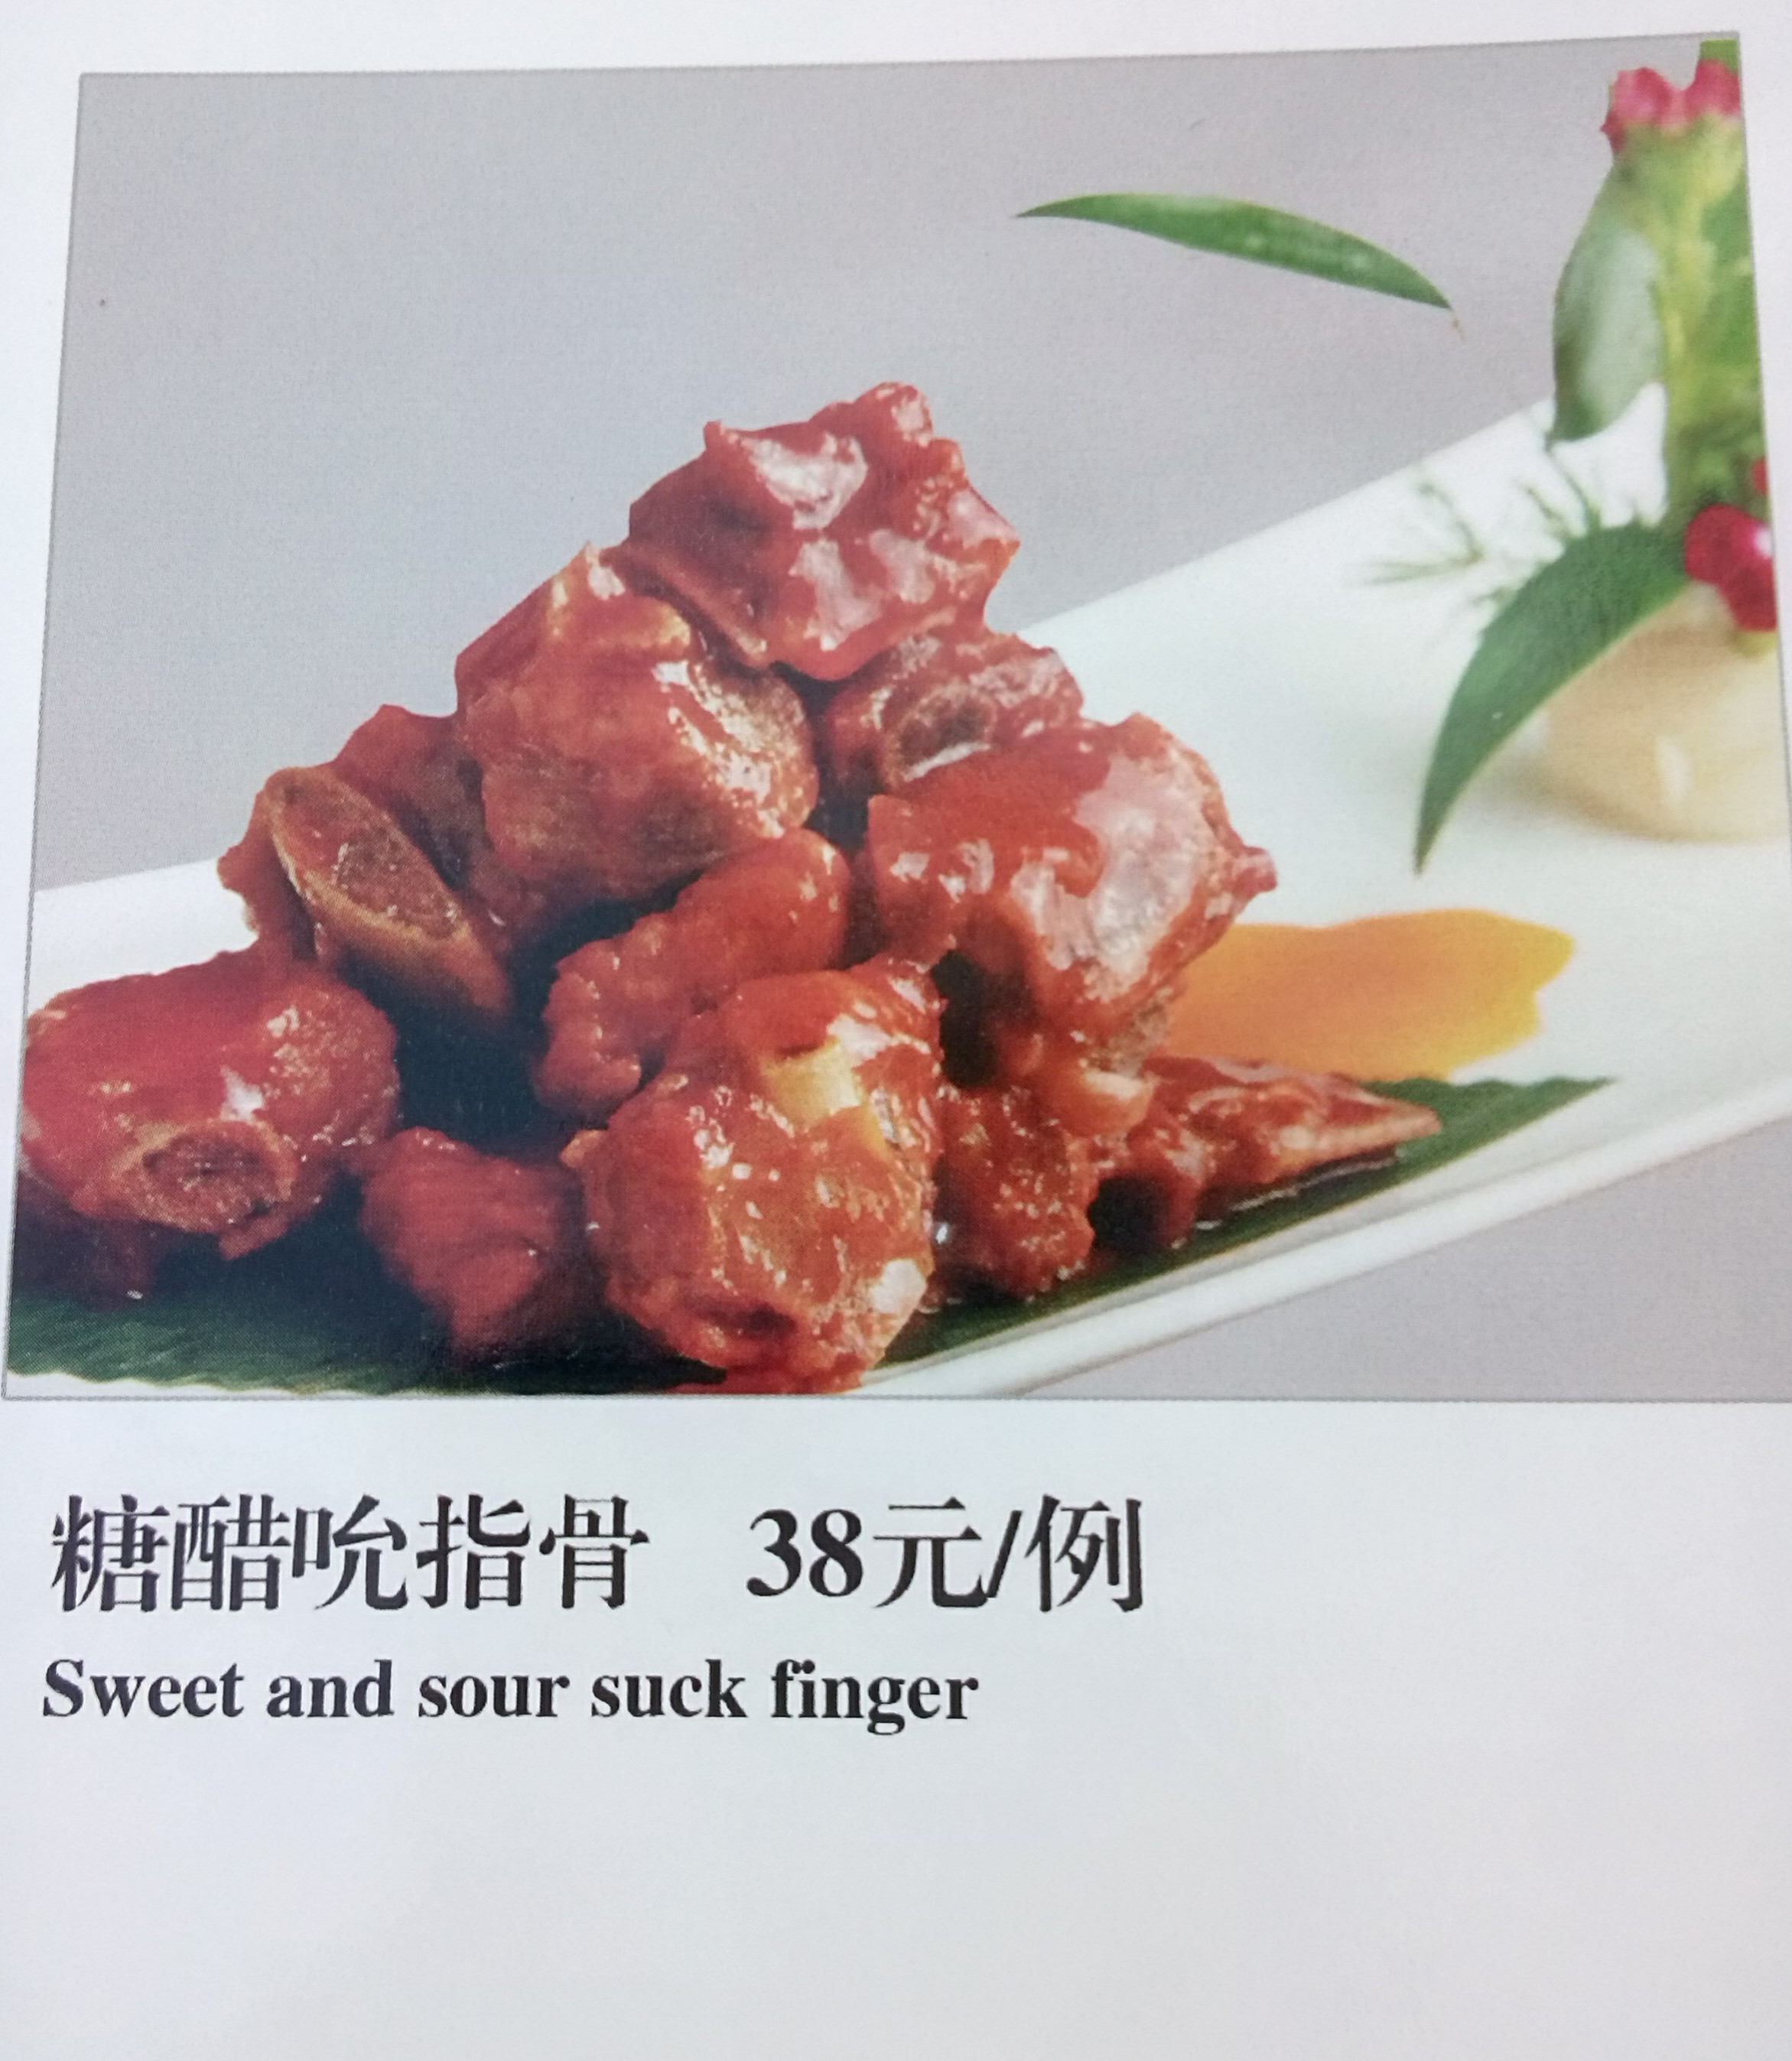 sweet-and-sour-suck-finger-beijing